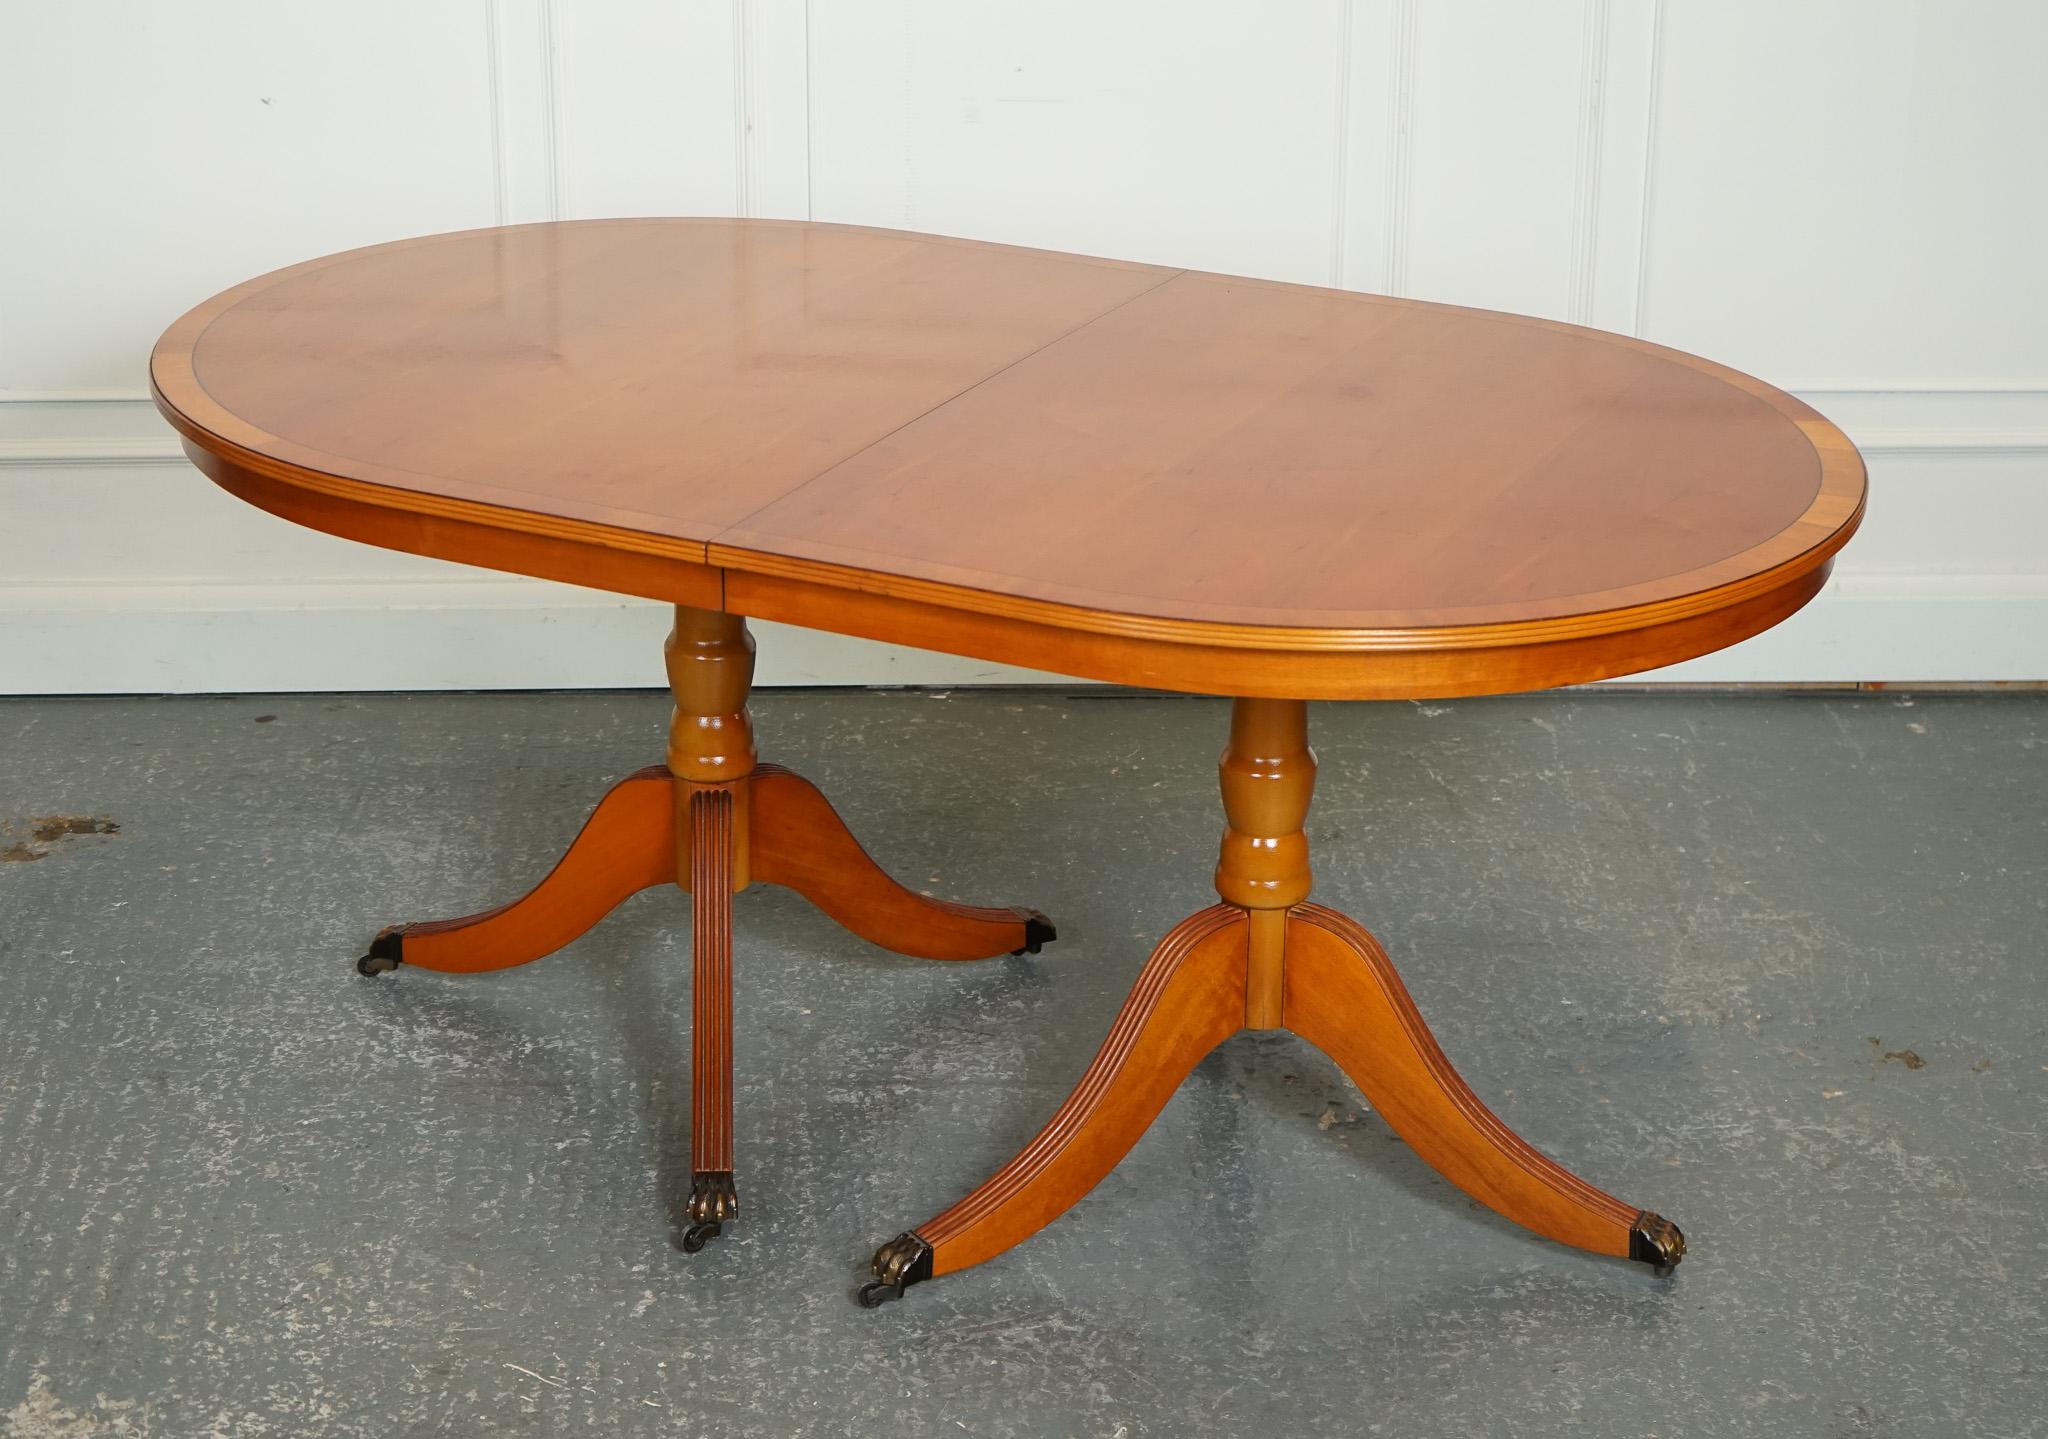 
Wir freuen uns, Ihnen den Vintage Twin Pedestal Yew Wood Extending Dining Table anbieten zu können.

Der ausziehbare Esstisch mit zwei Sockeln aus Eibenholz im Vintage-Stil ist ein wunderschönes und funktionelles Möbelstück, das bequem Platz für 6